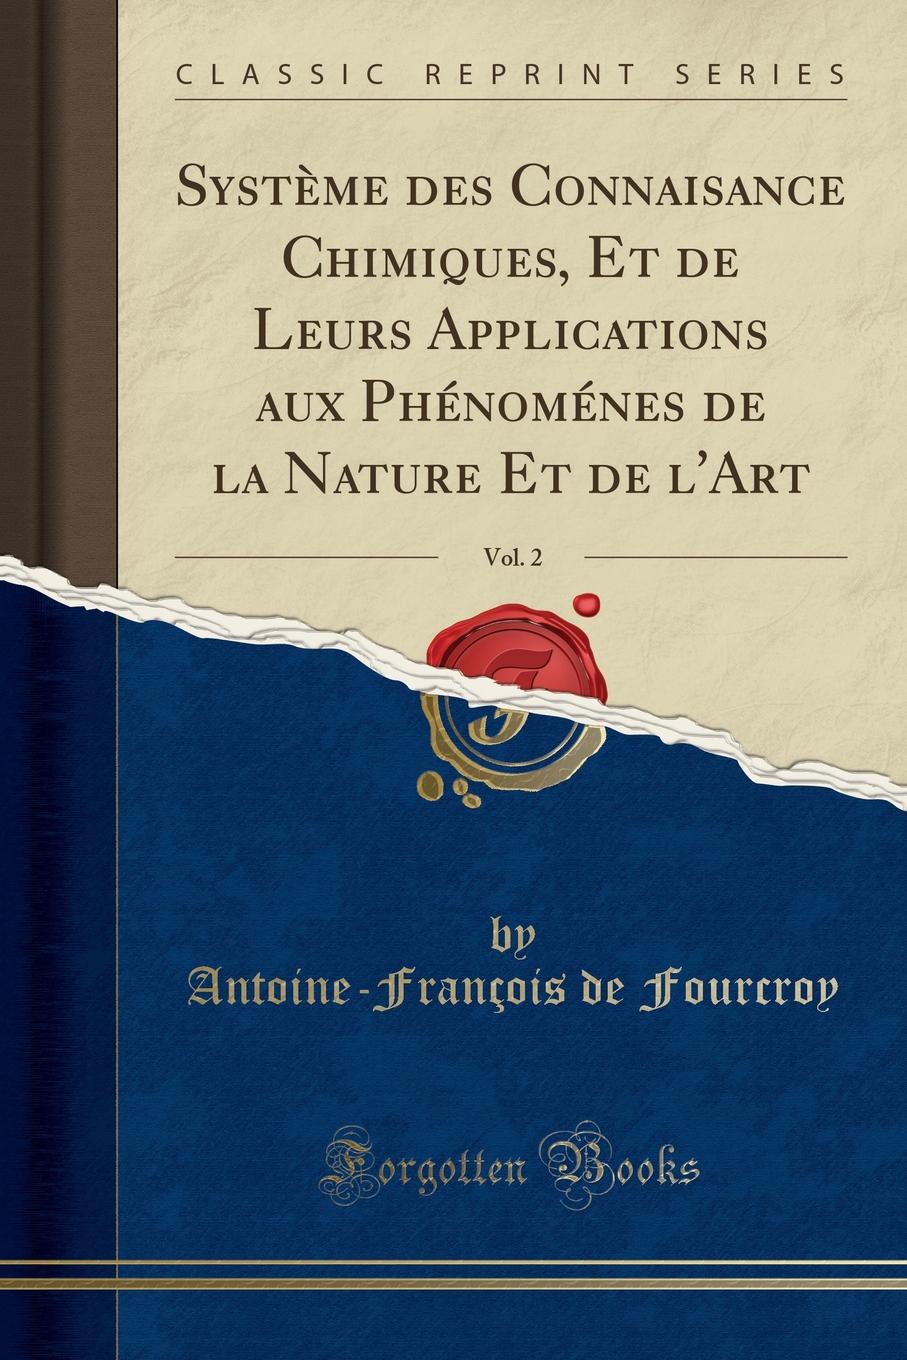 Antoine-François de Fourcroy Systeme des Connaisance Chimiques, Et de Leurs Applications aux Phenomenes de la Nature Et de l.Art, Vol. 2 (Classic Reprint)